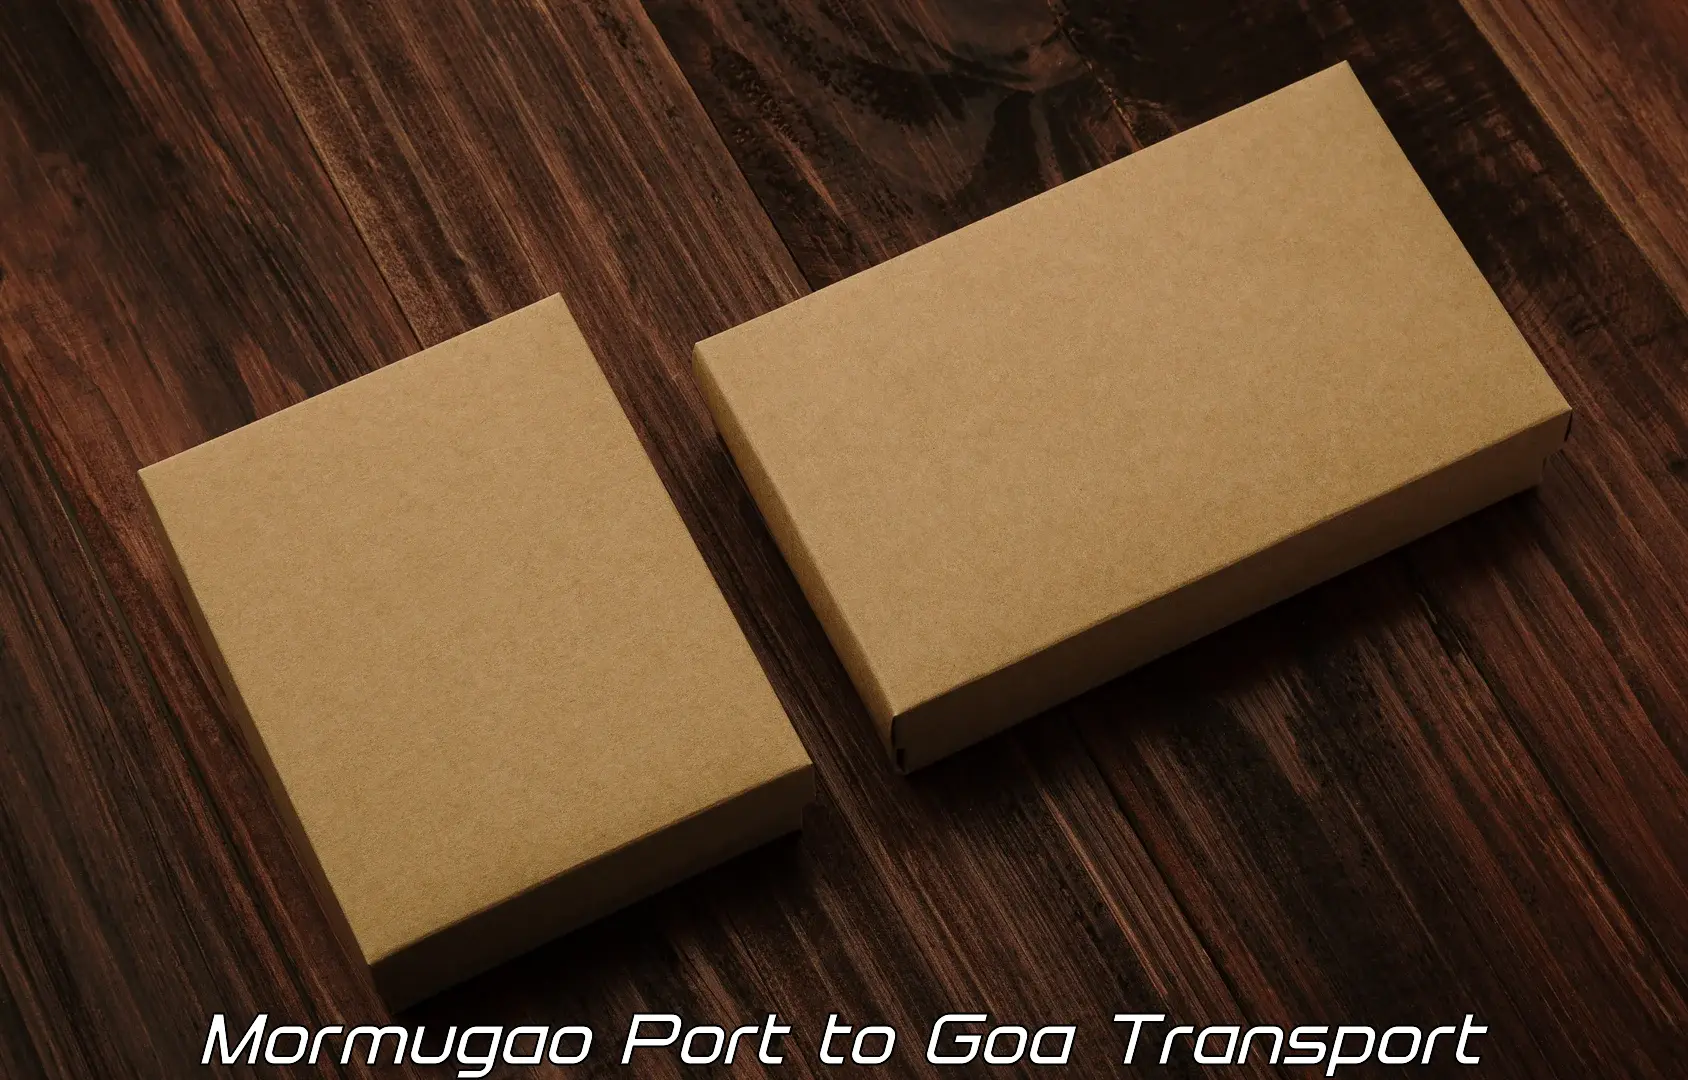 Transport shared services Mormugao Port to Margao